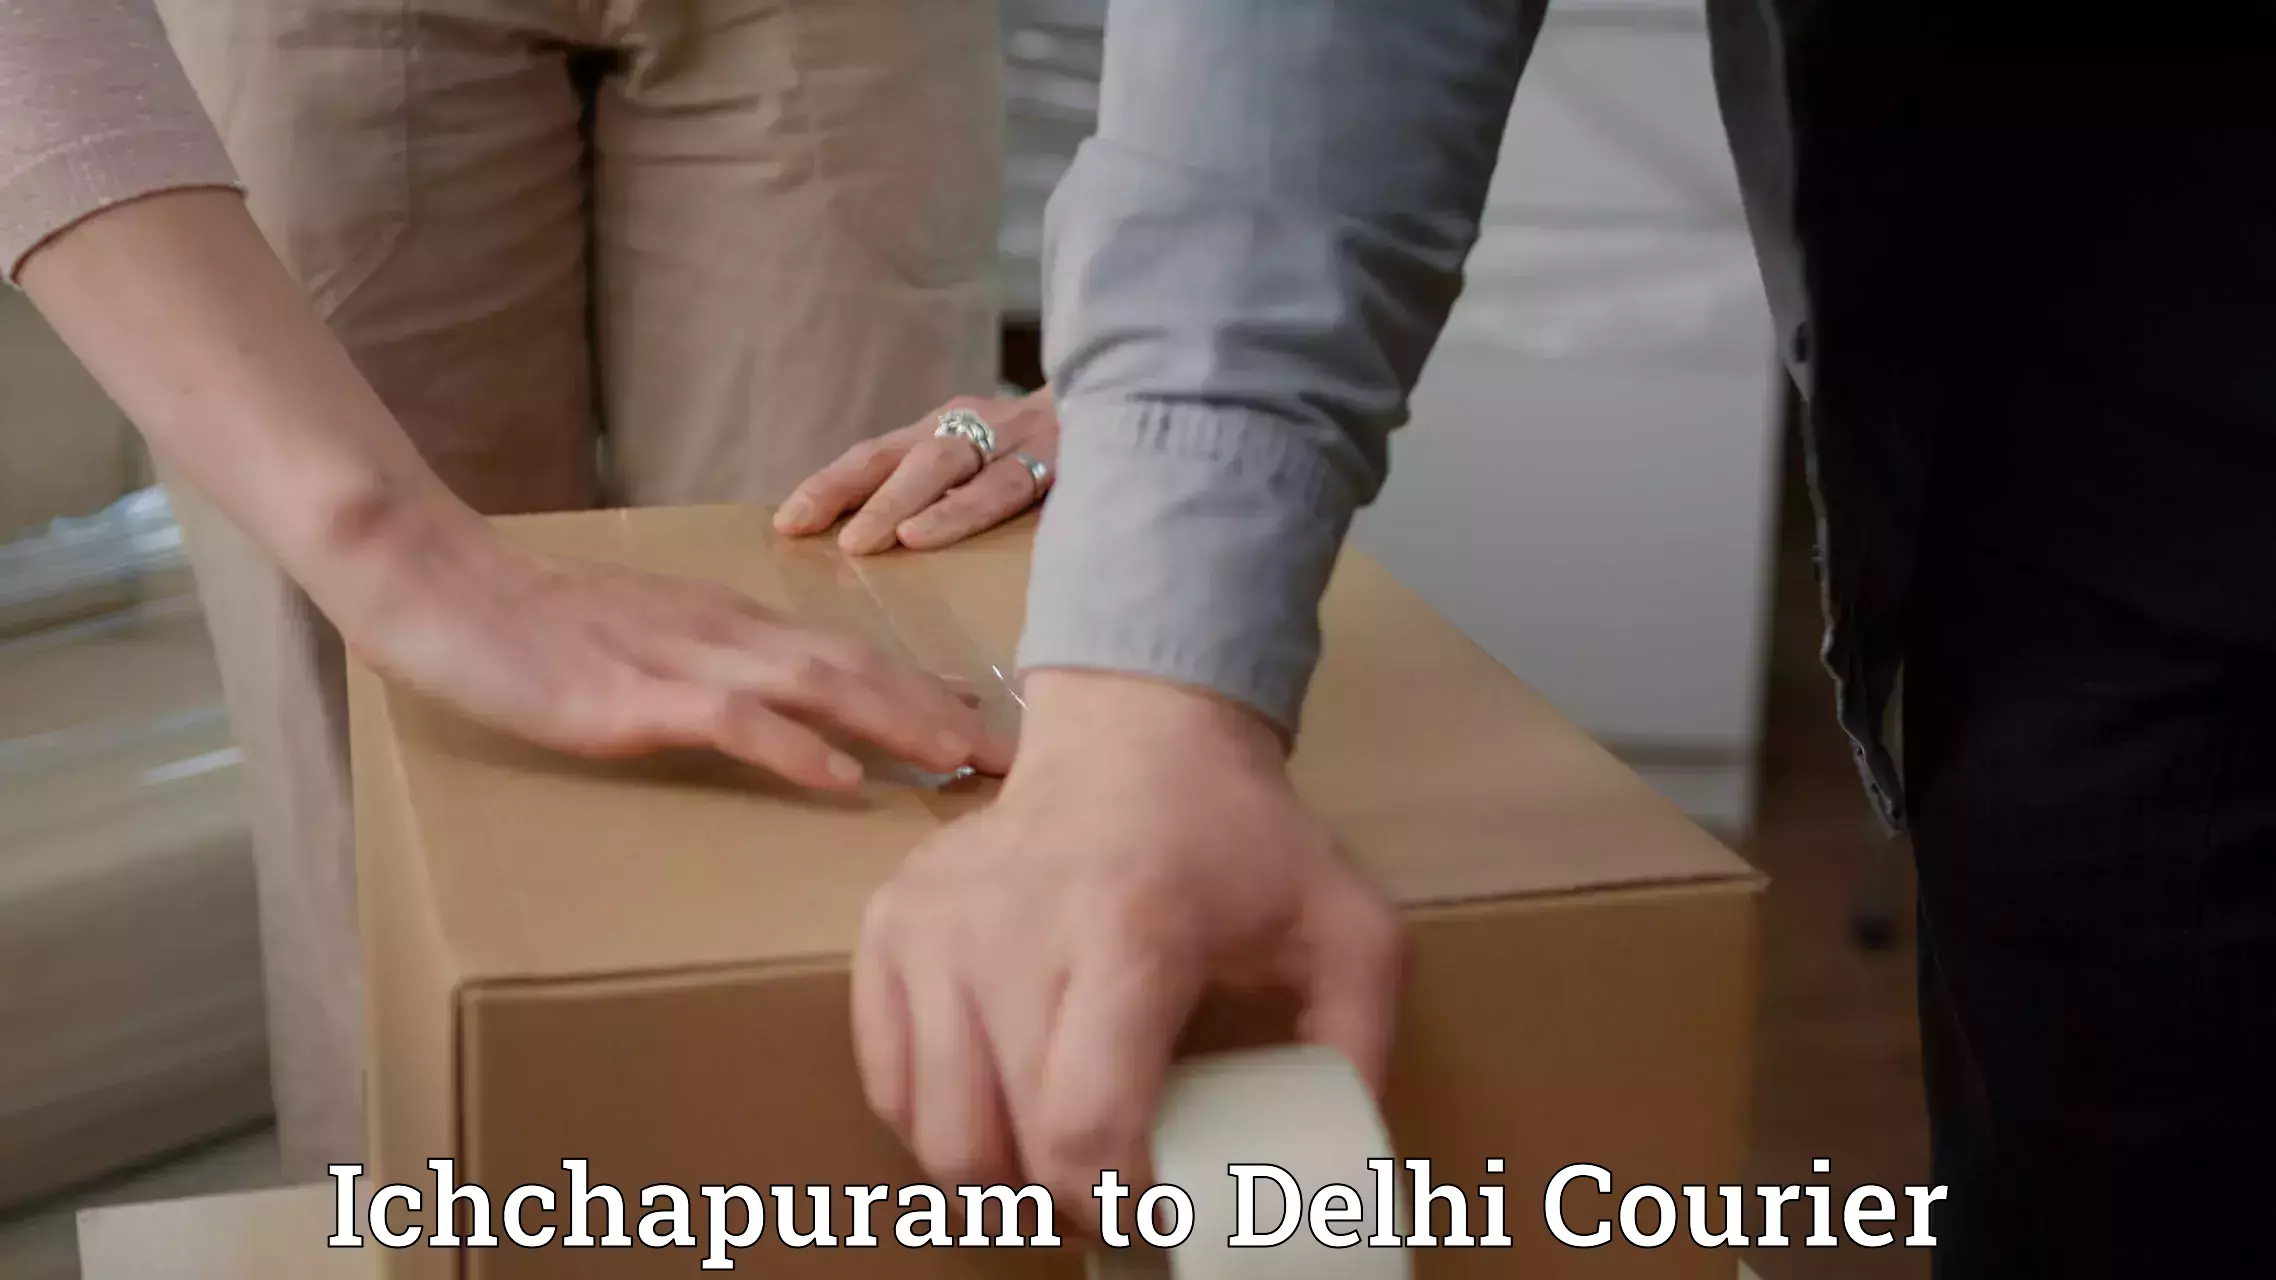 Versatile courier offerings Ichchapuram to NIT Delhi